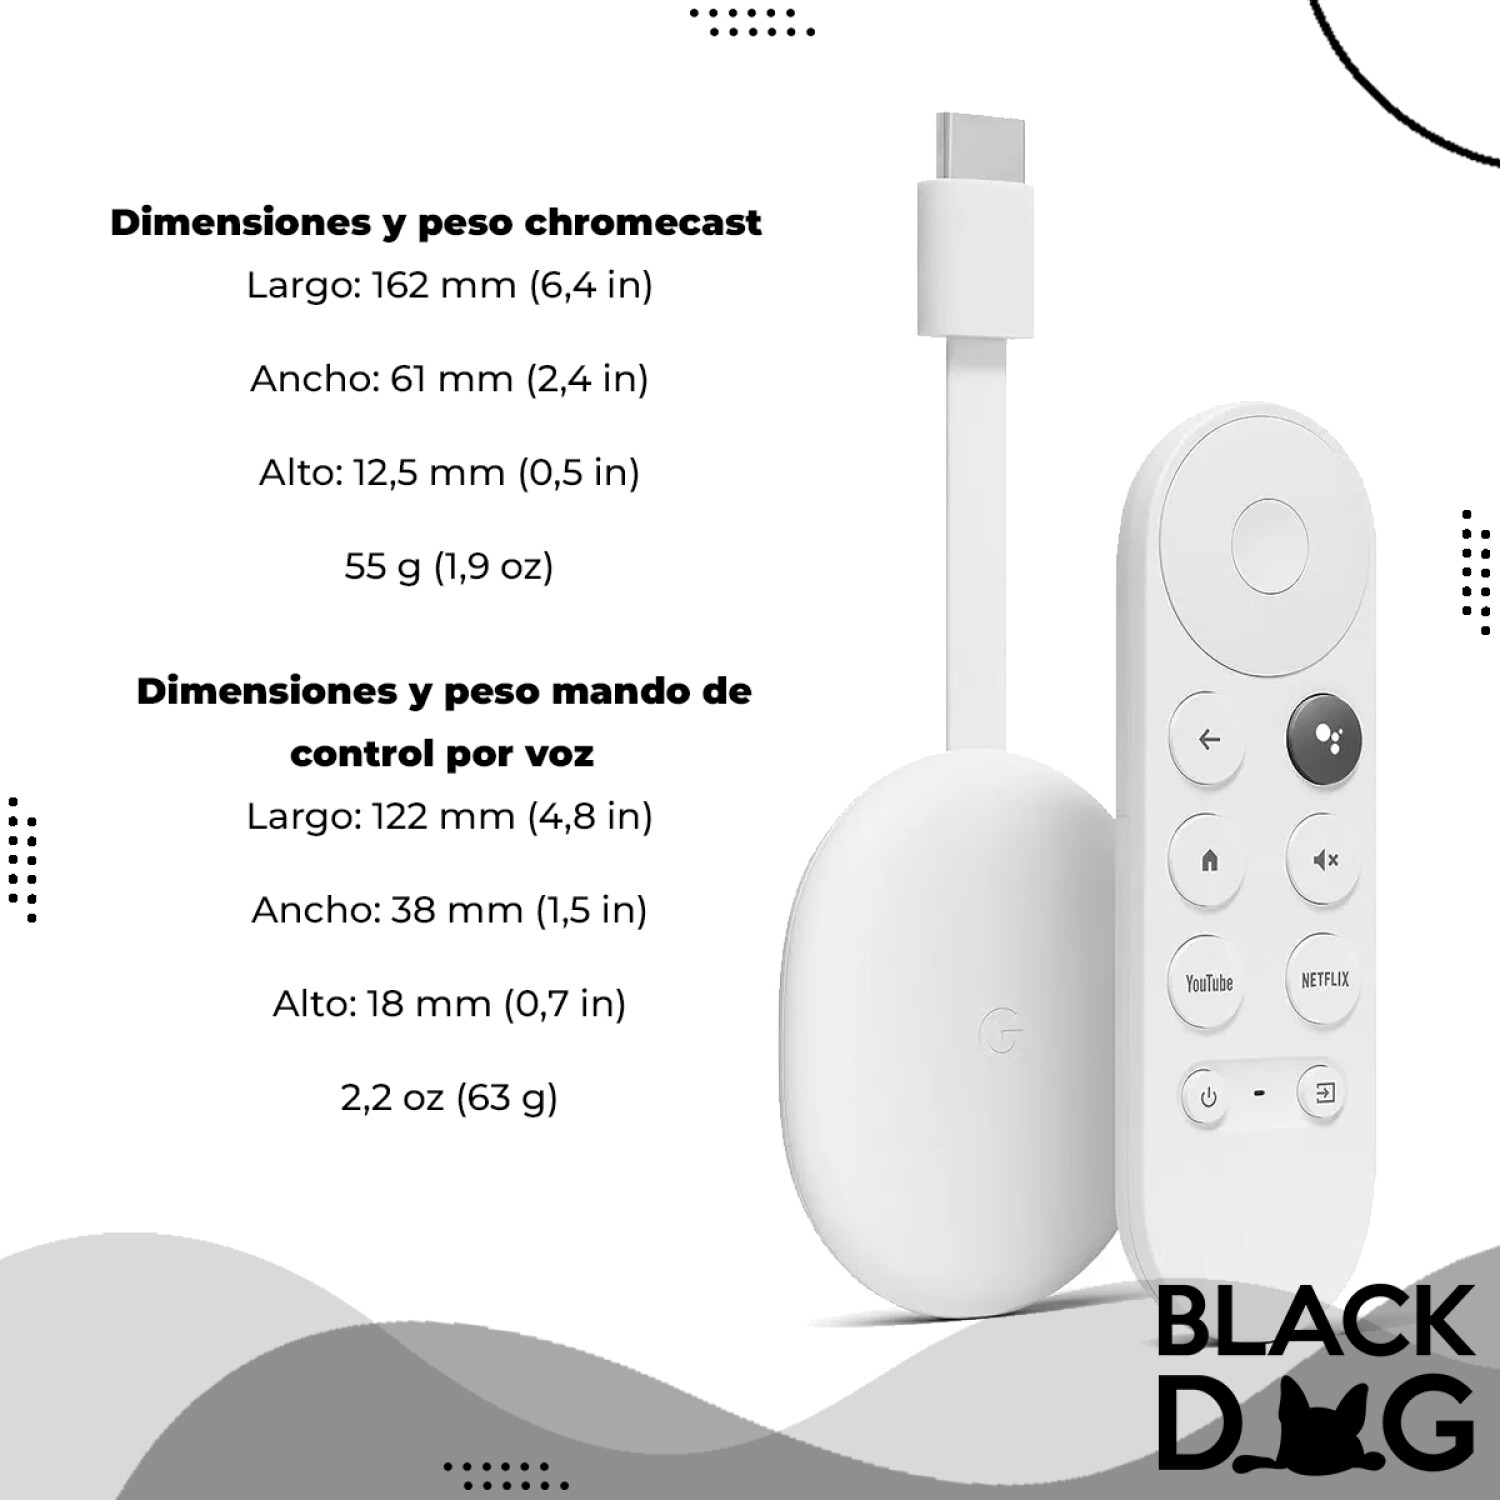 Chromecast Con Google Tv Hd Control Y Comando De Voz + Smartwatch